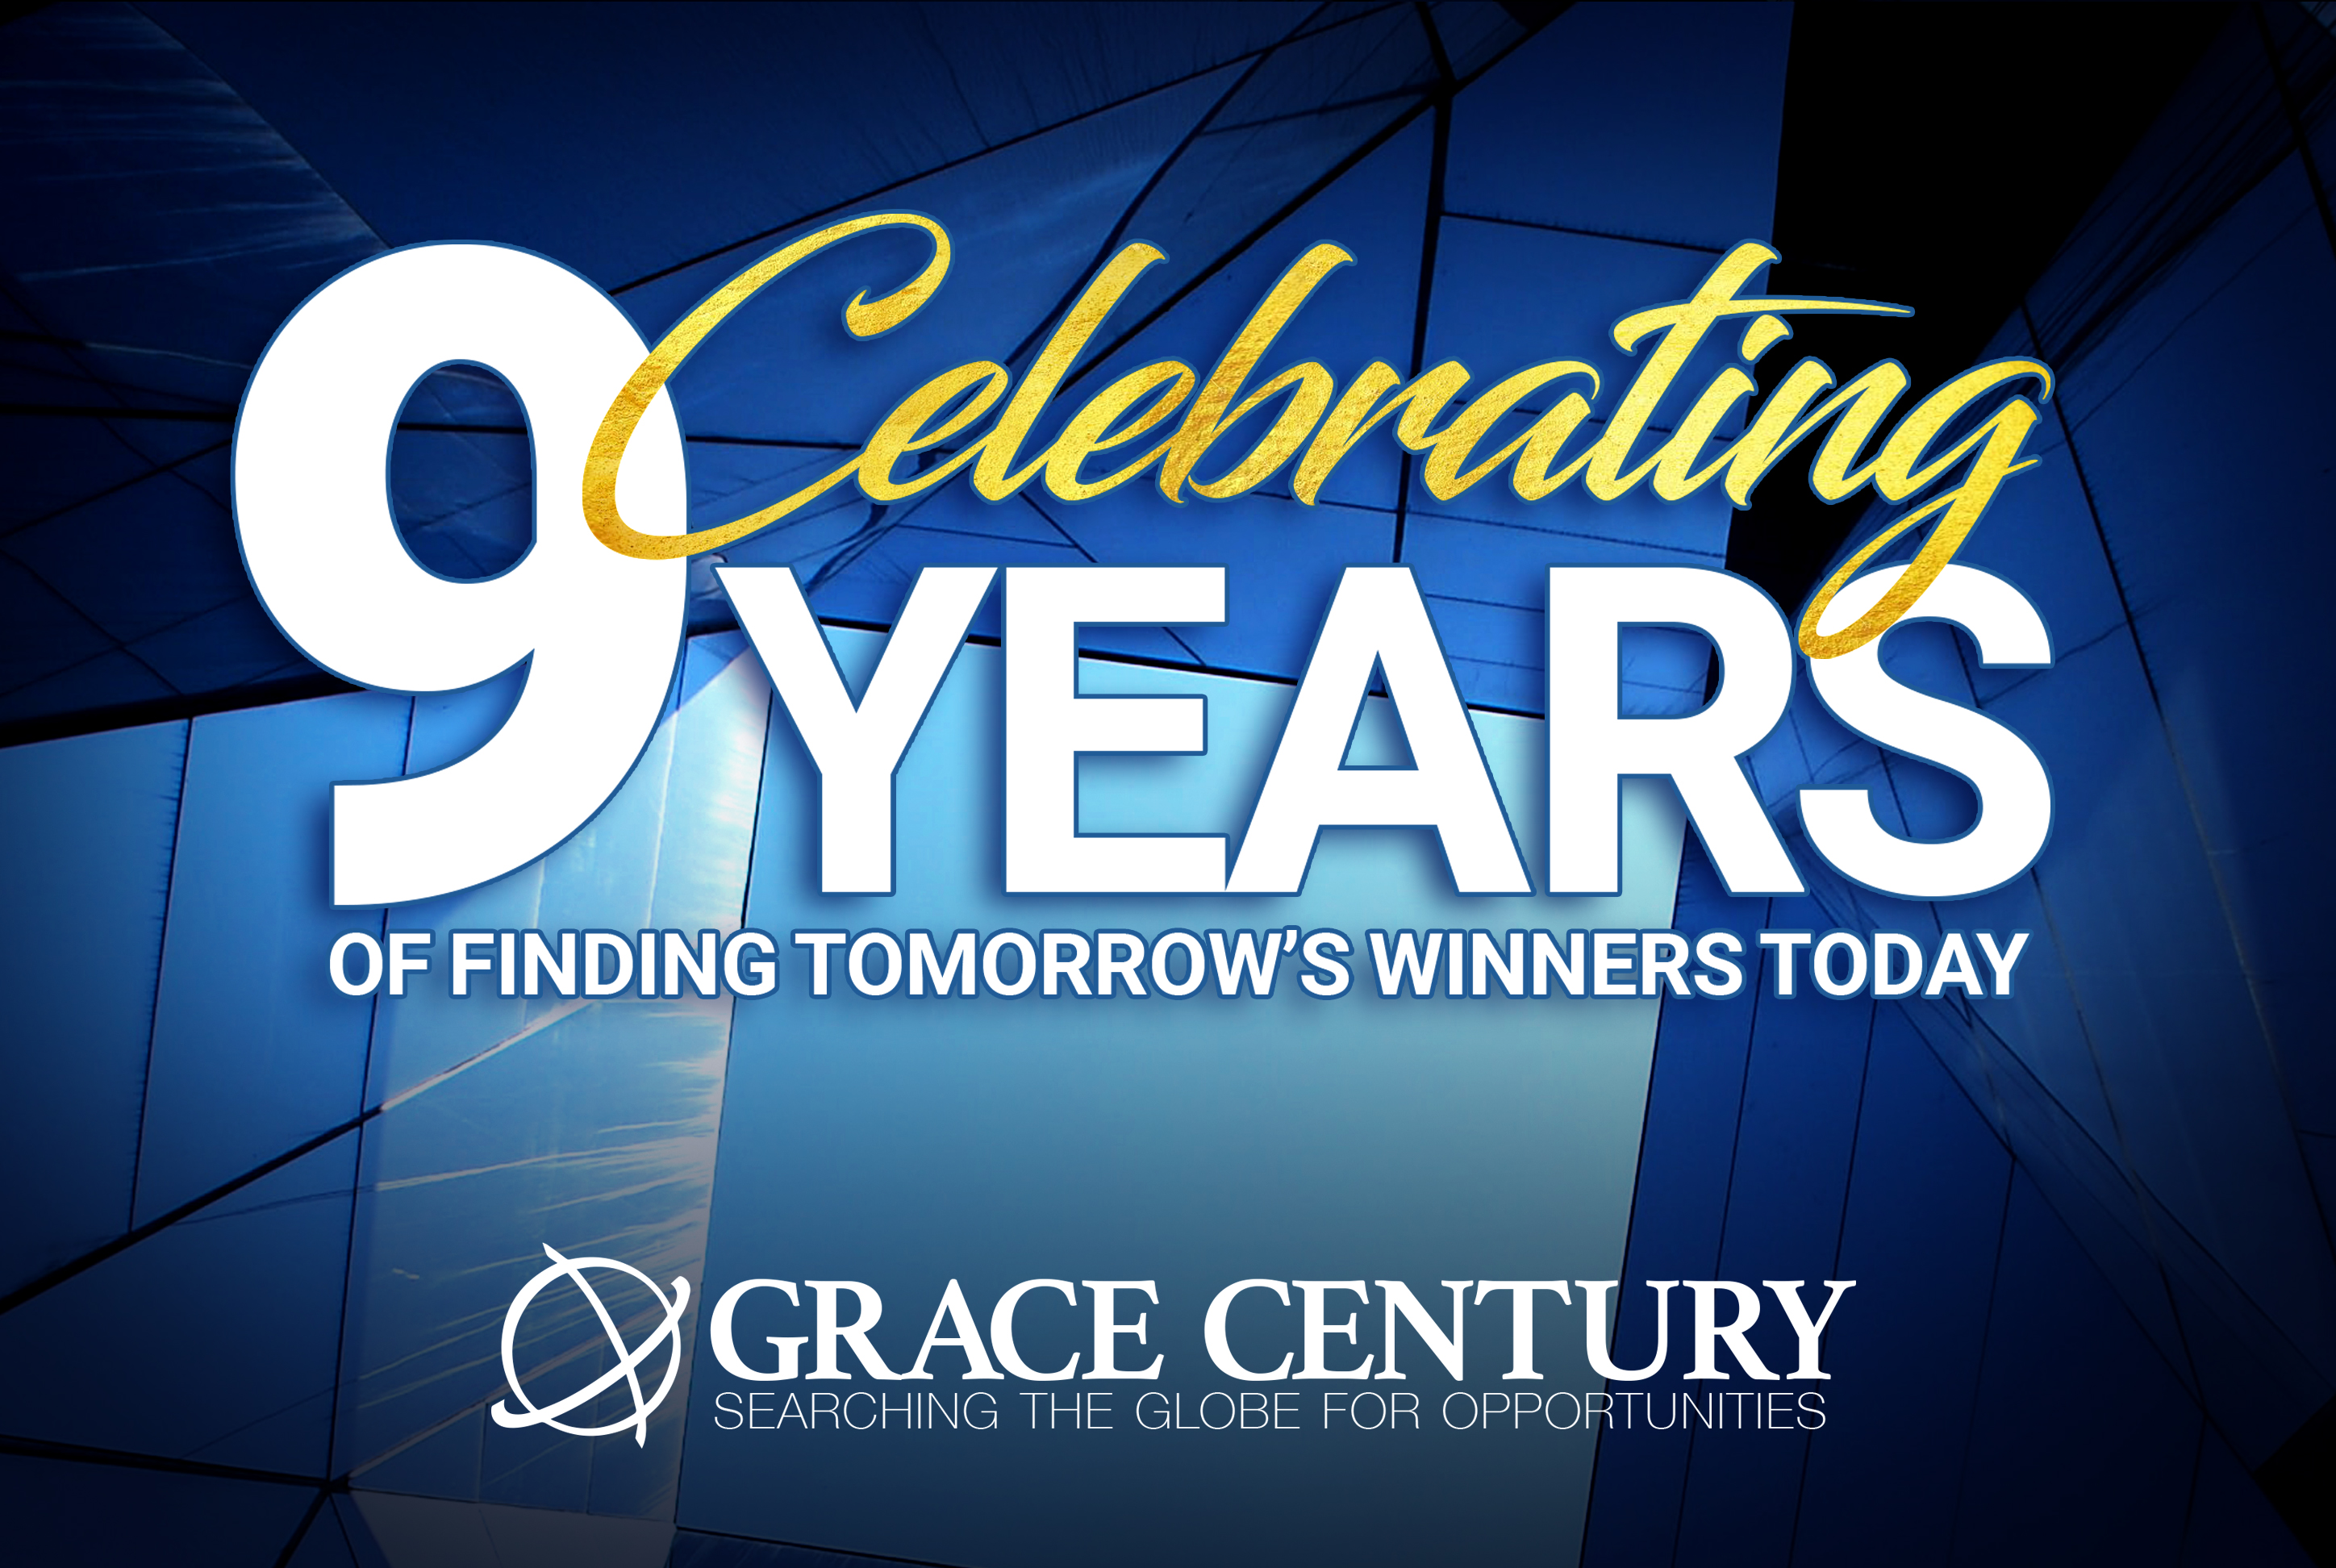 Grace Century 9 year anniversary